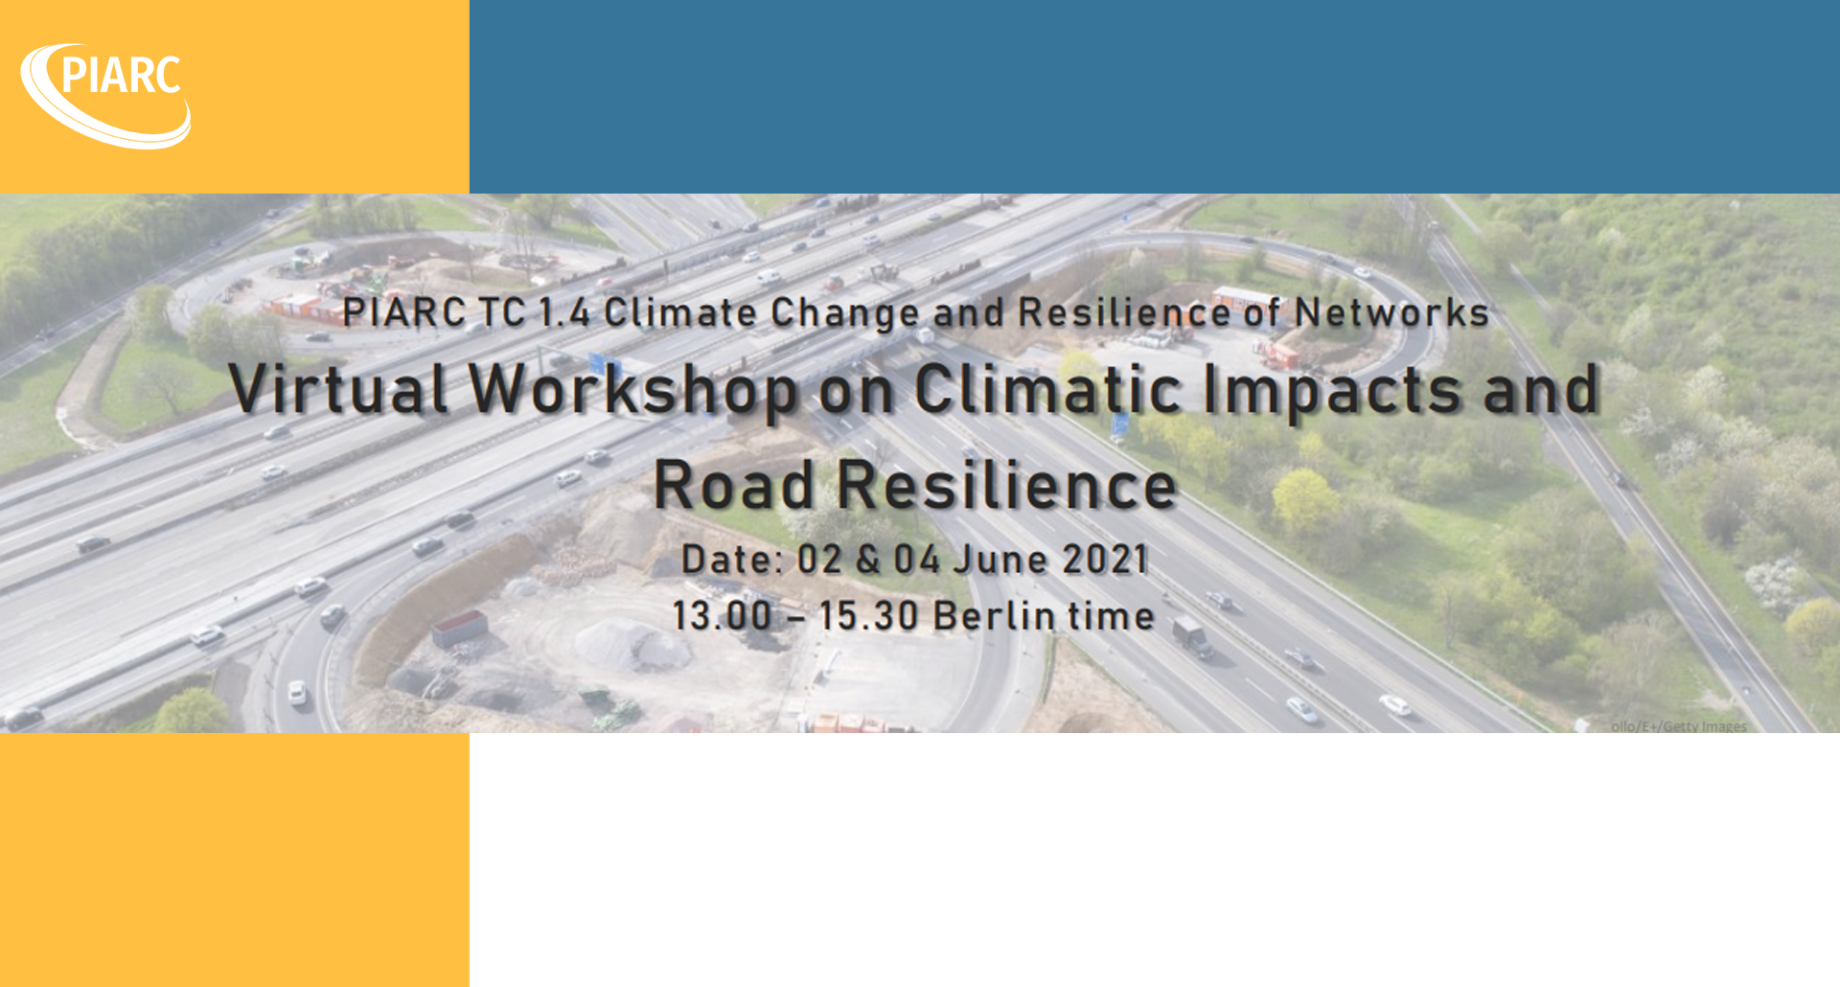 ¡Únase al próximo taller virtual de PIARC sobre los impactos climáticos y la resiliencia vial, del 2 al 4 de junio!